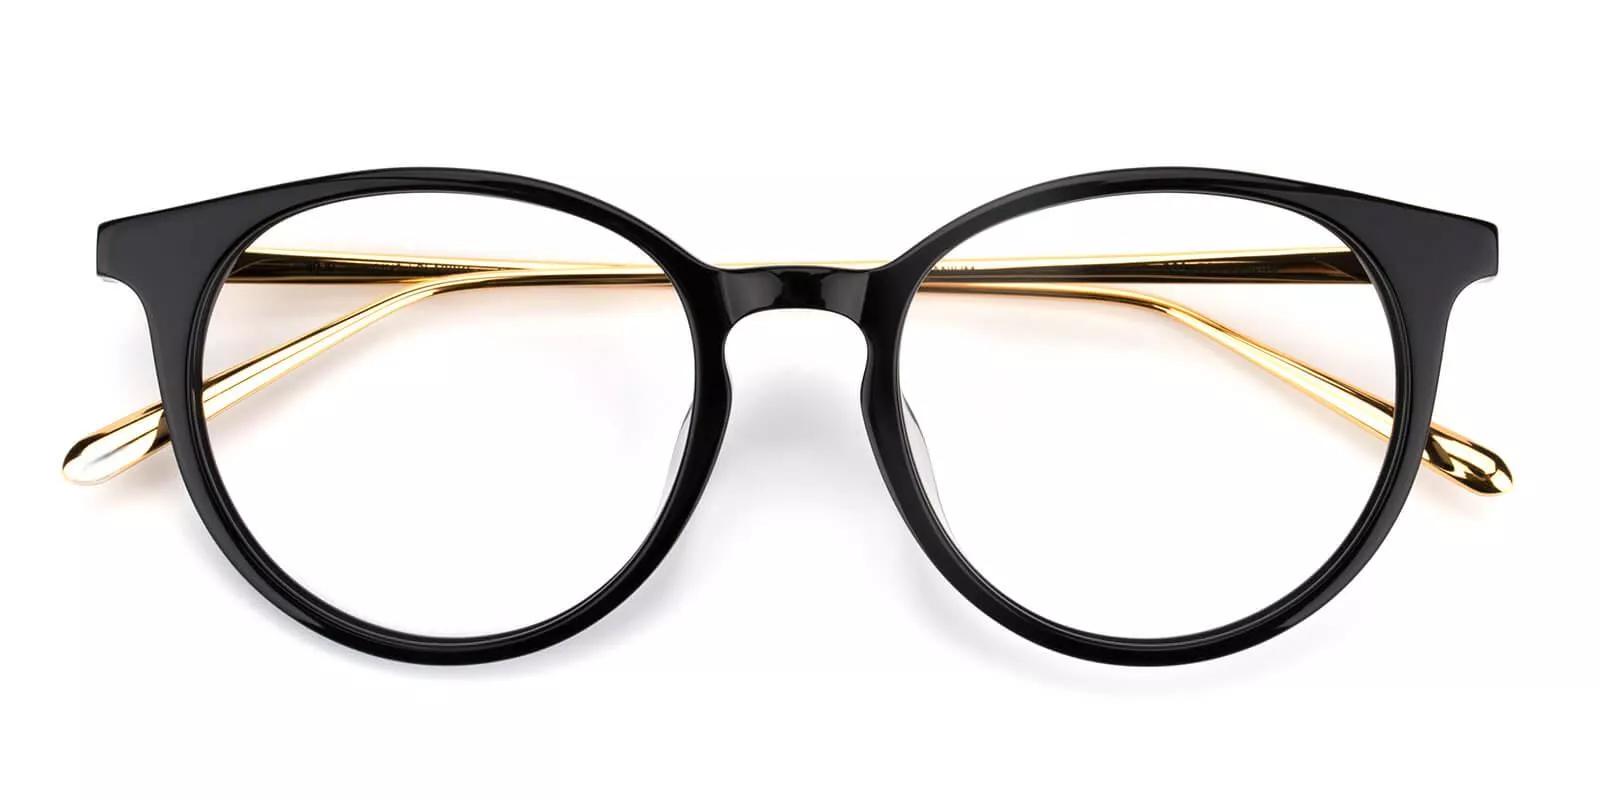 Woodbridge Acetate Eyeglasses Black